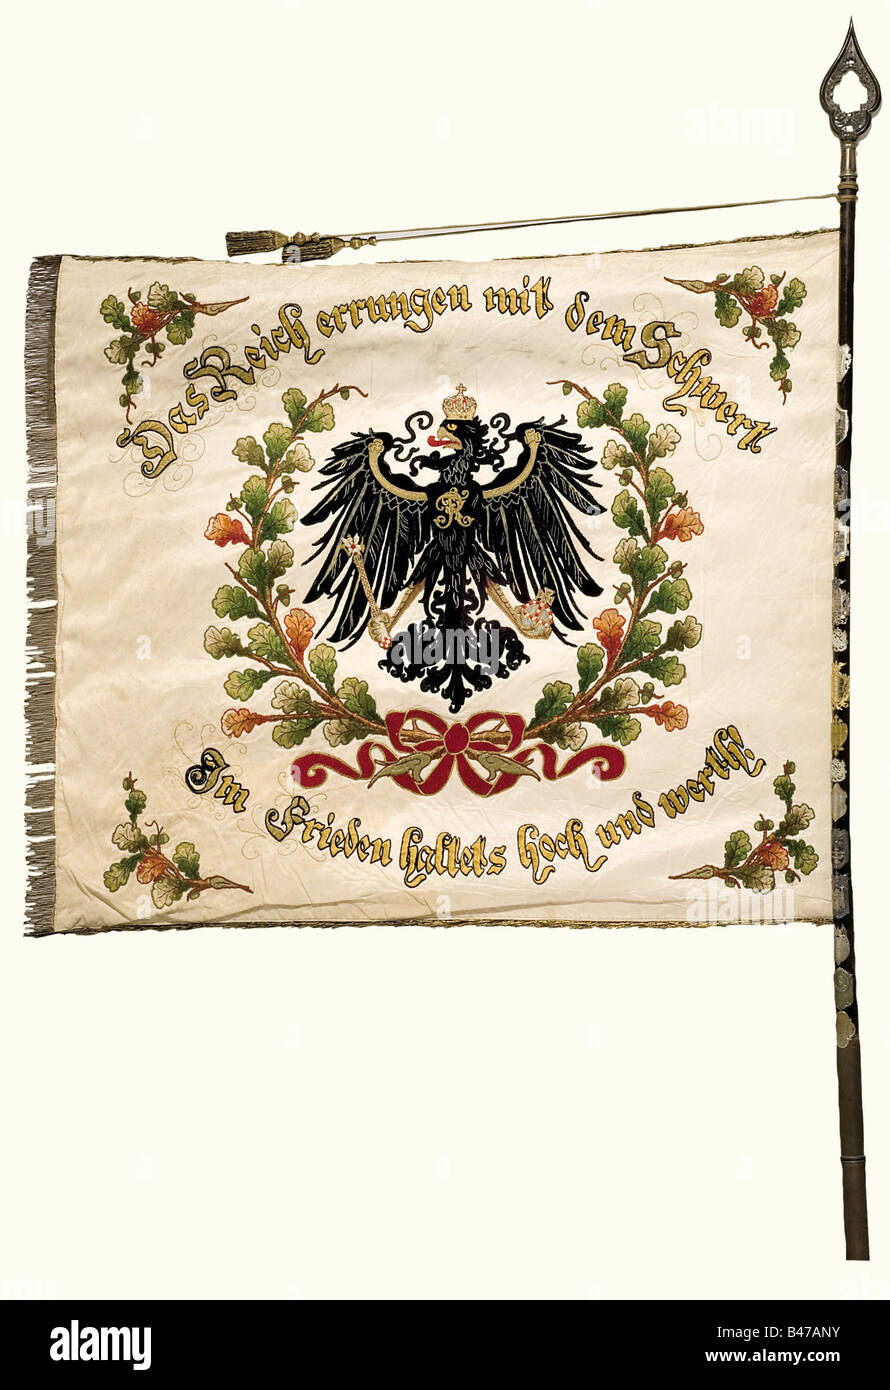 Une couleur d'association d'anciens combattants, la soie blanche de Hiddesdorf-Ohlendorf avec un aigle impérial brodé en or et en couleur dans une couronne de feuilles de chêne. L'inscription environnante, 'Das Reich errungen mit dem Schwert - Im Frieden haltes hoch und wert' (l'empire a été gagné avec l'épée - En paix le tenir haut et dans le respect). L'inscription est brodée sur le côté opposé dans les couleurs impériales, noir-blanc-rouge 'Krieger-Verein - Hiddesdorf-Ohlendorf - 1896.' (War Veterans Association - Hiddesdorf-Ohlendorf- 1896). Frange dorée sur trois côtés. 135 x 120 cm. Nai, Banque D'Images